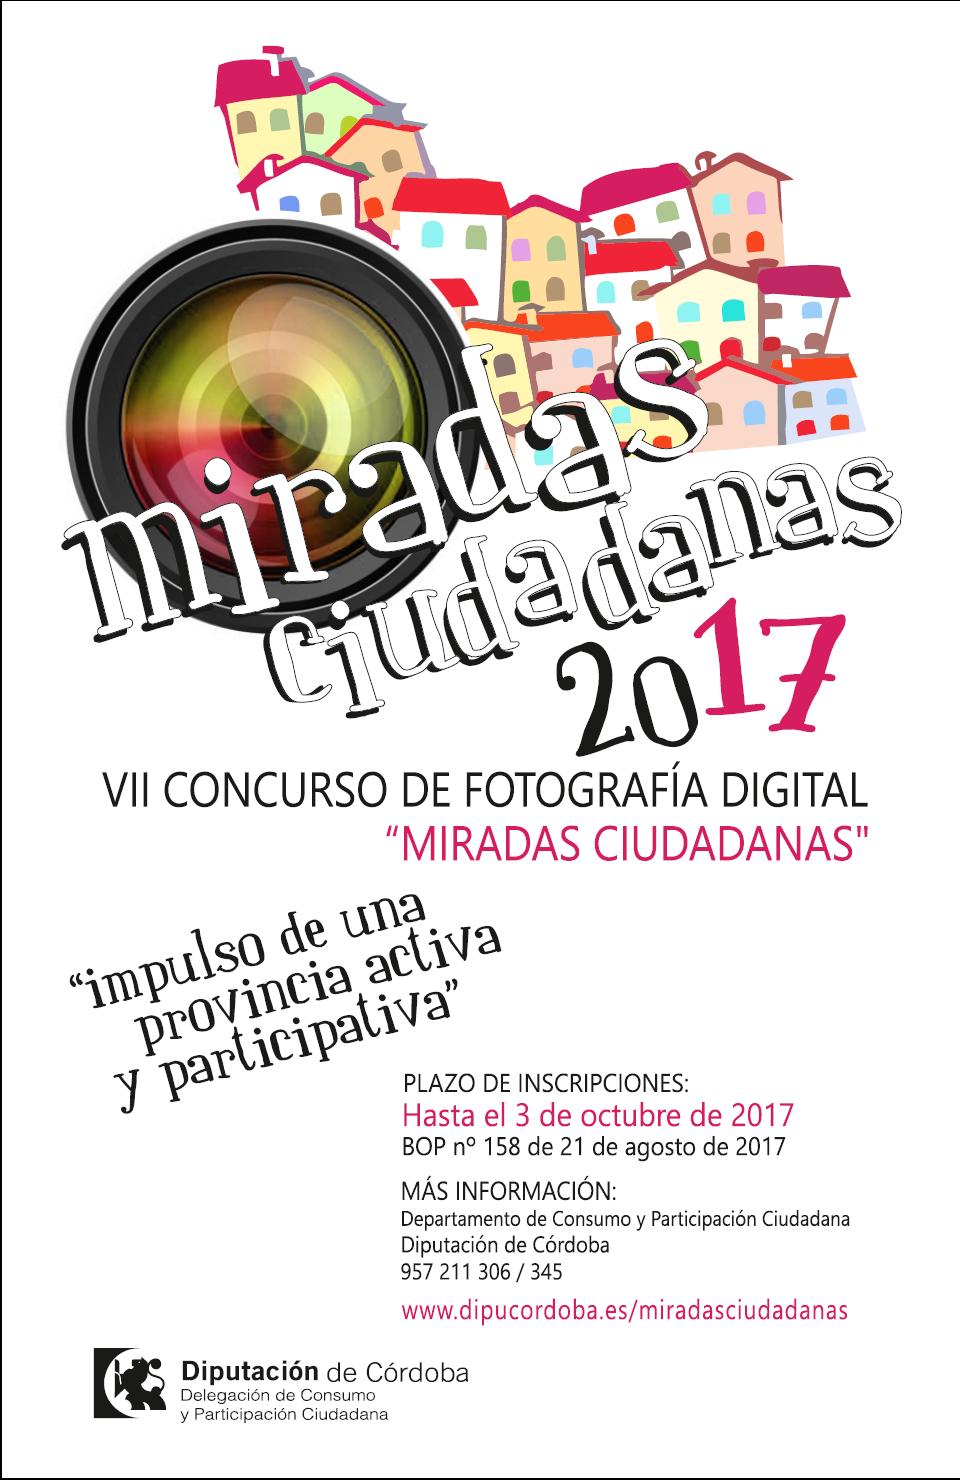 VII Concurso de Fotografía Digital 2017 Miradas Ciudadanas